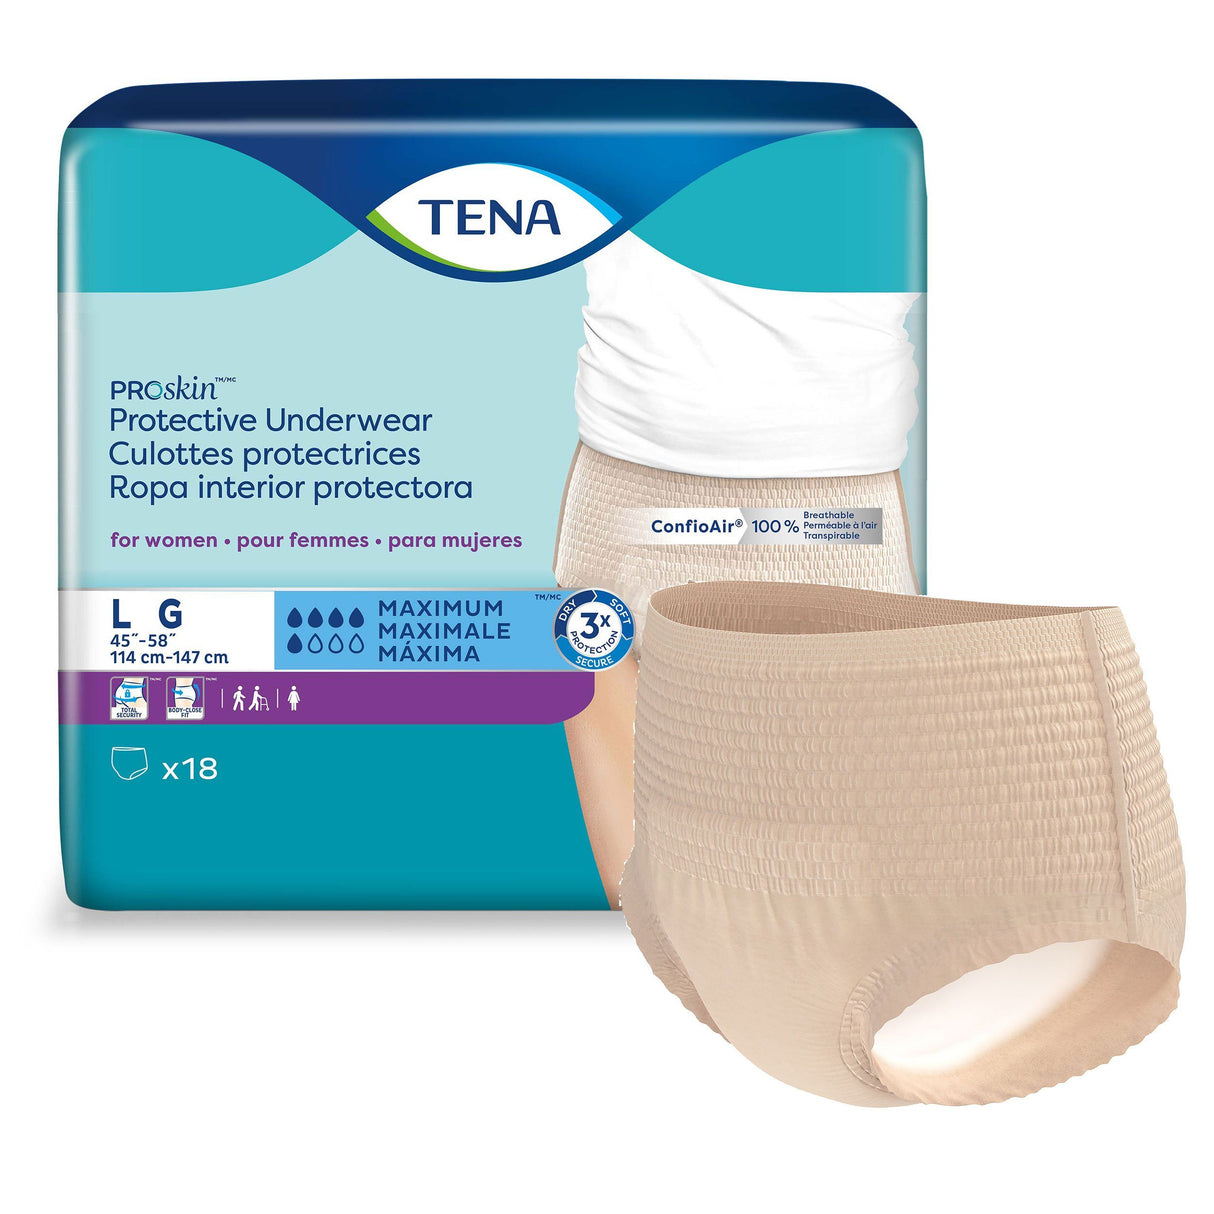 Image of TENA Proskin Maximum Absorbency Underwear for Women